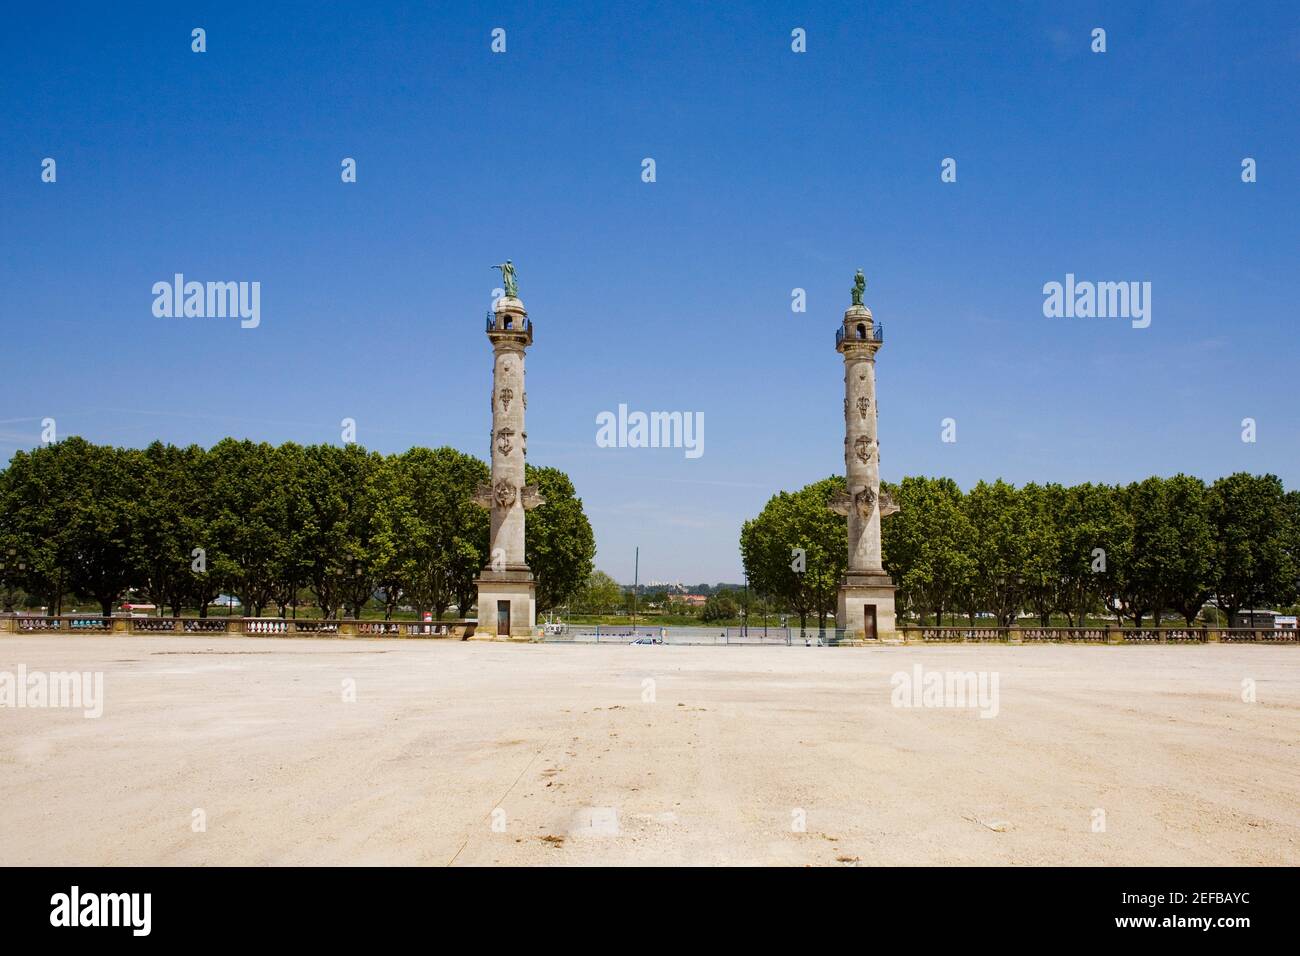 Columns at the entrance of a park, Rostrale Columns, Place des Quinconces, Bordeaux, France Stock Photo